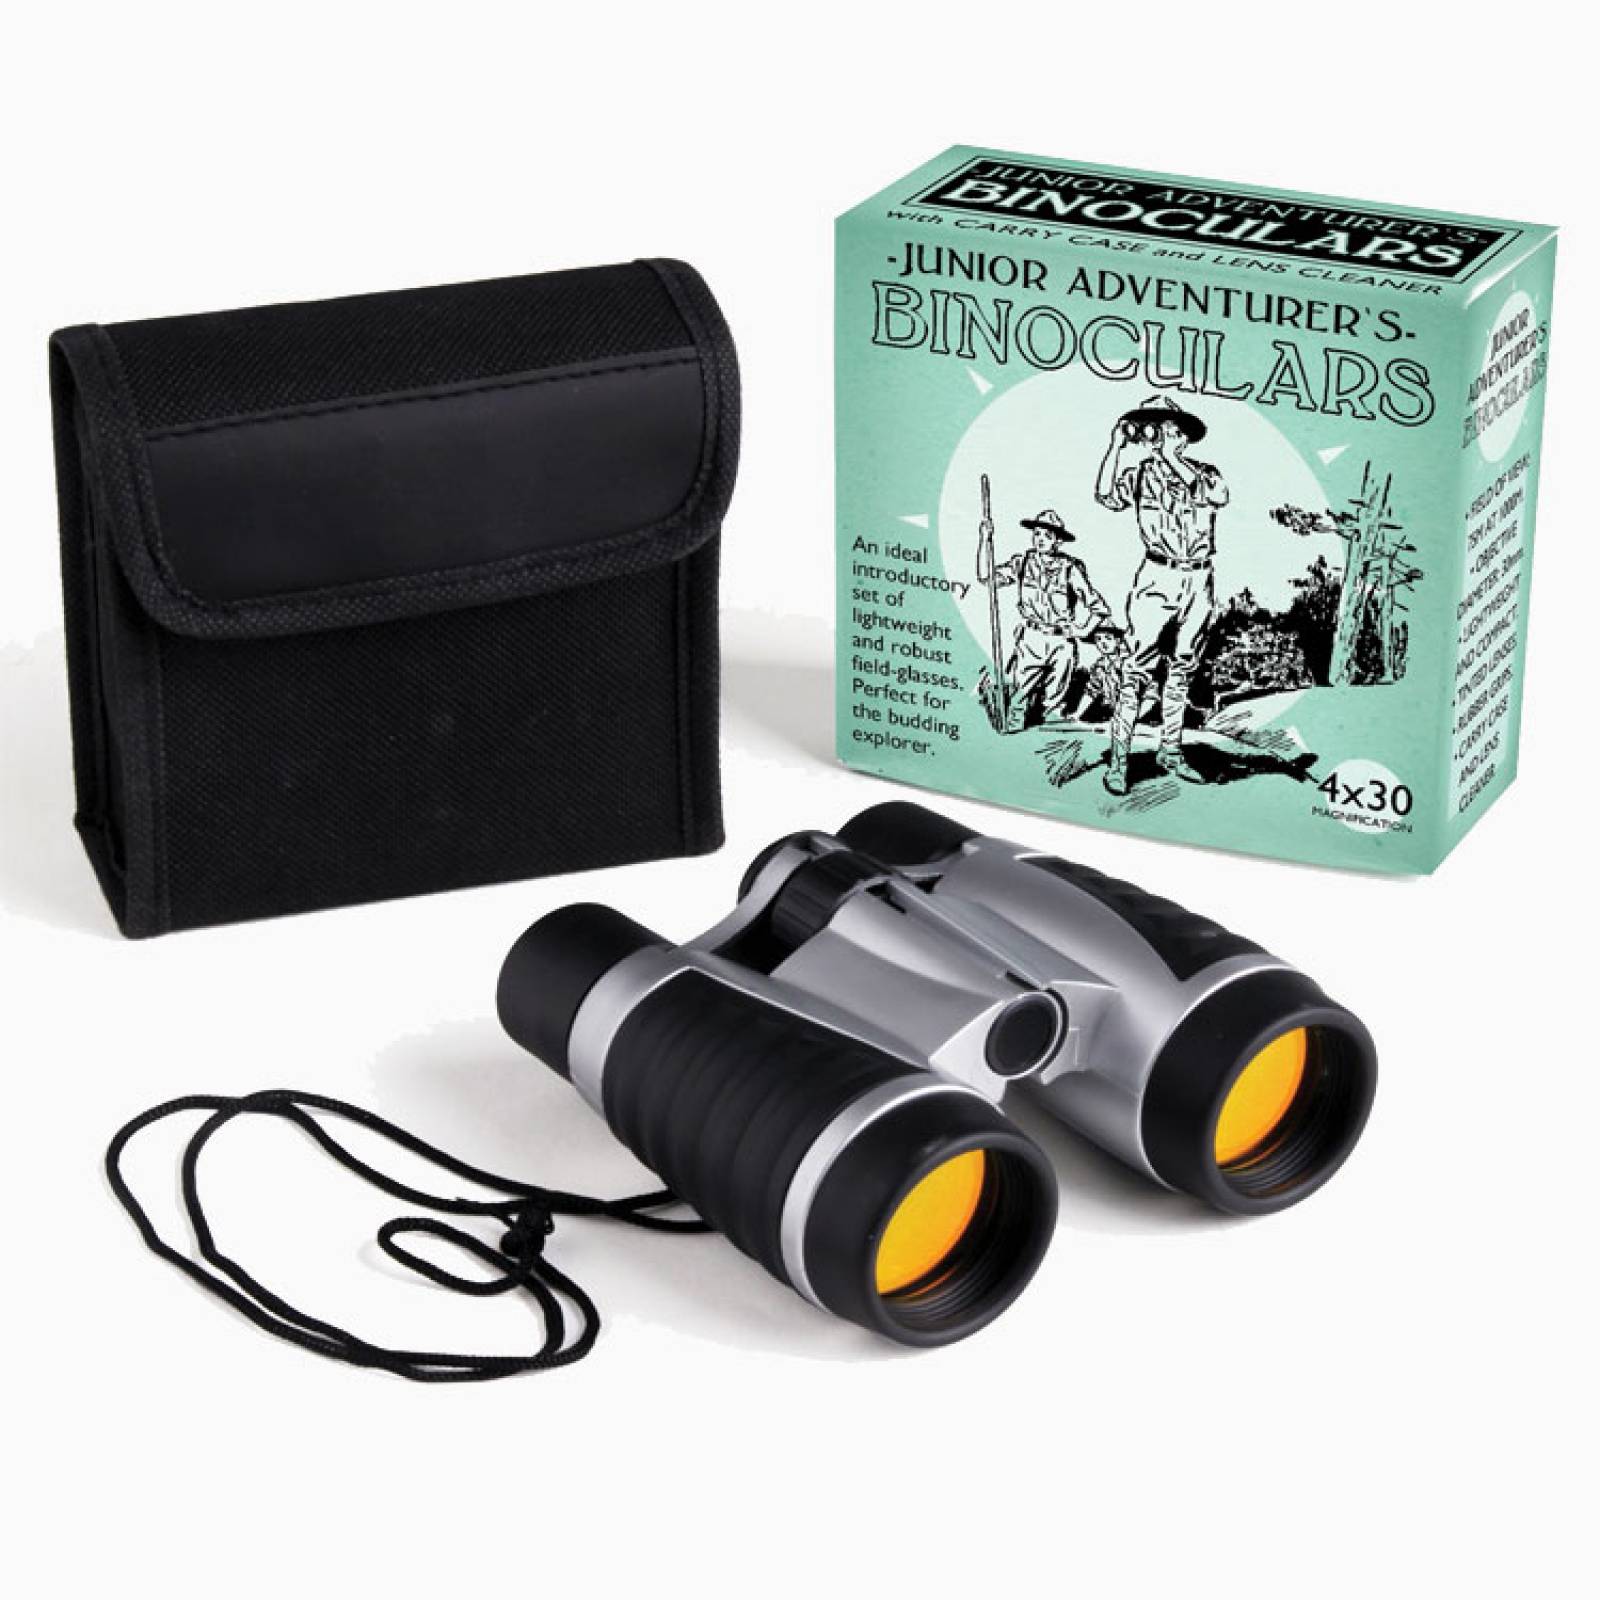 Junior Adventurer's Binoculars In Carry Case